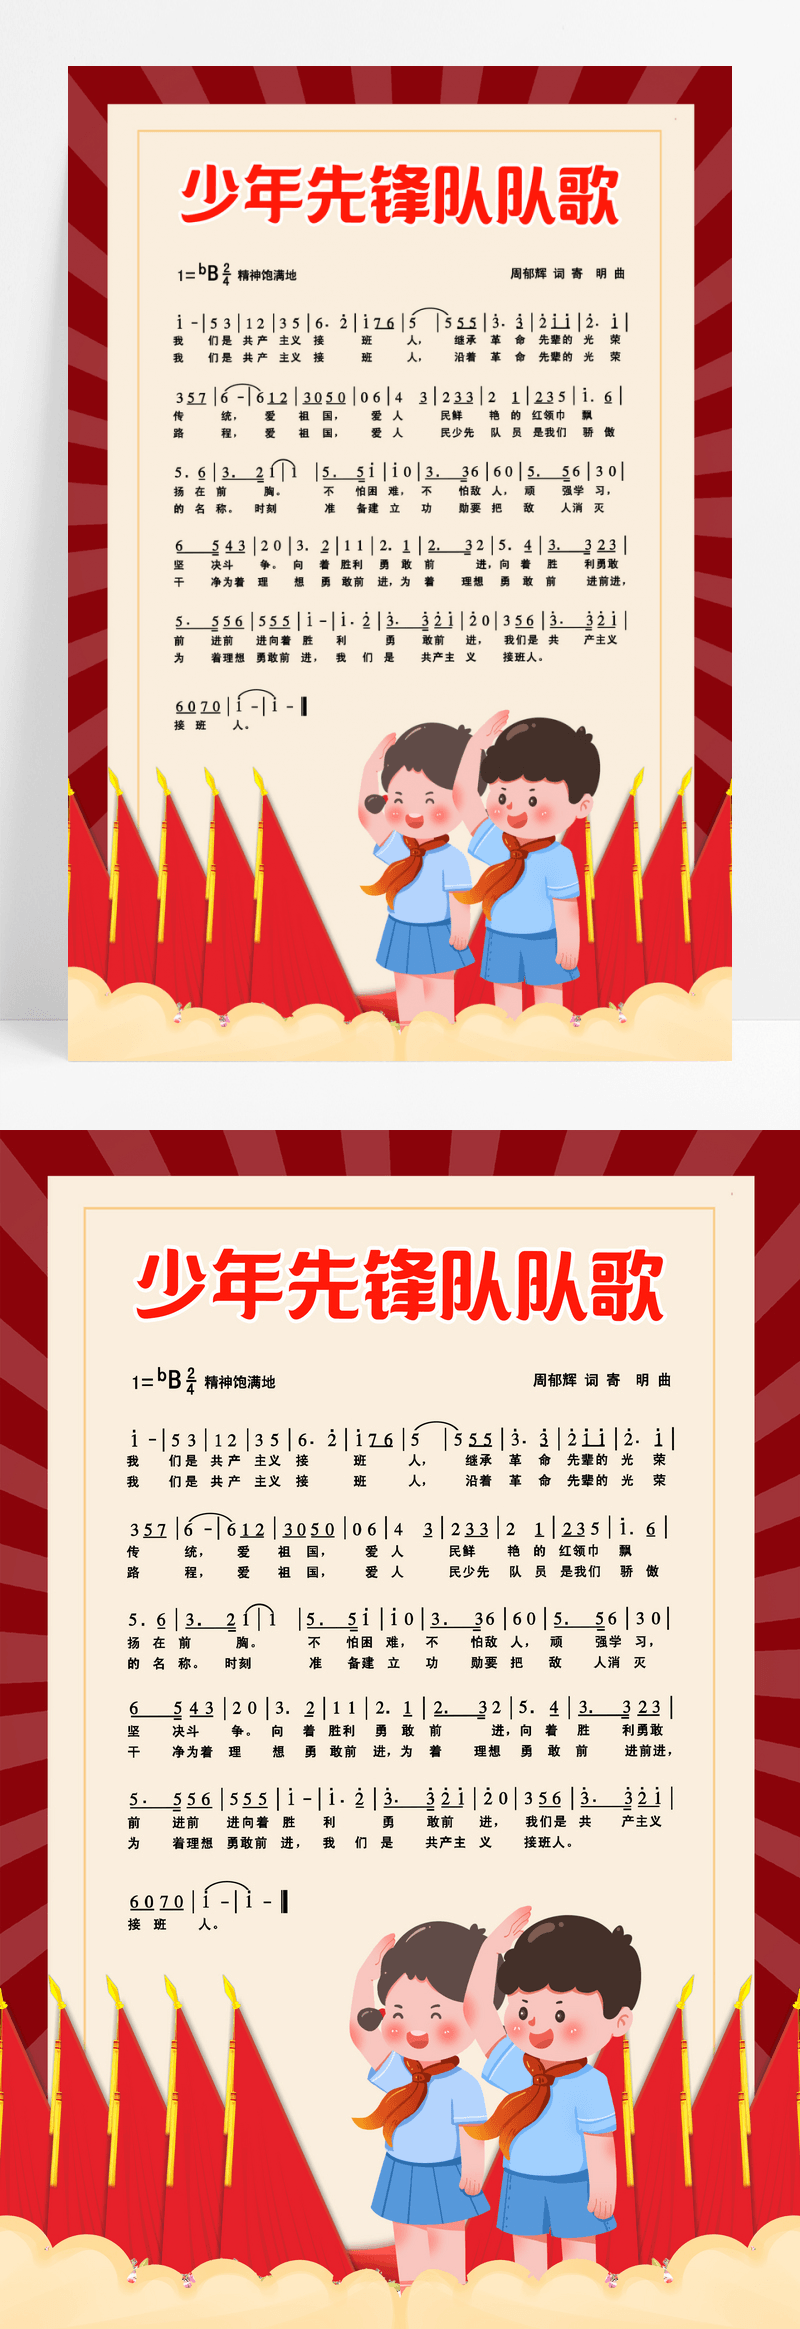 红色卡通少年敬礼先锋队歌曲宣传海报